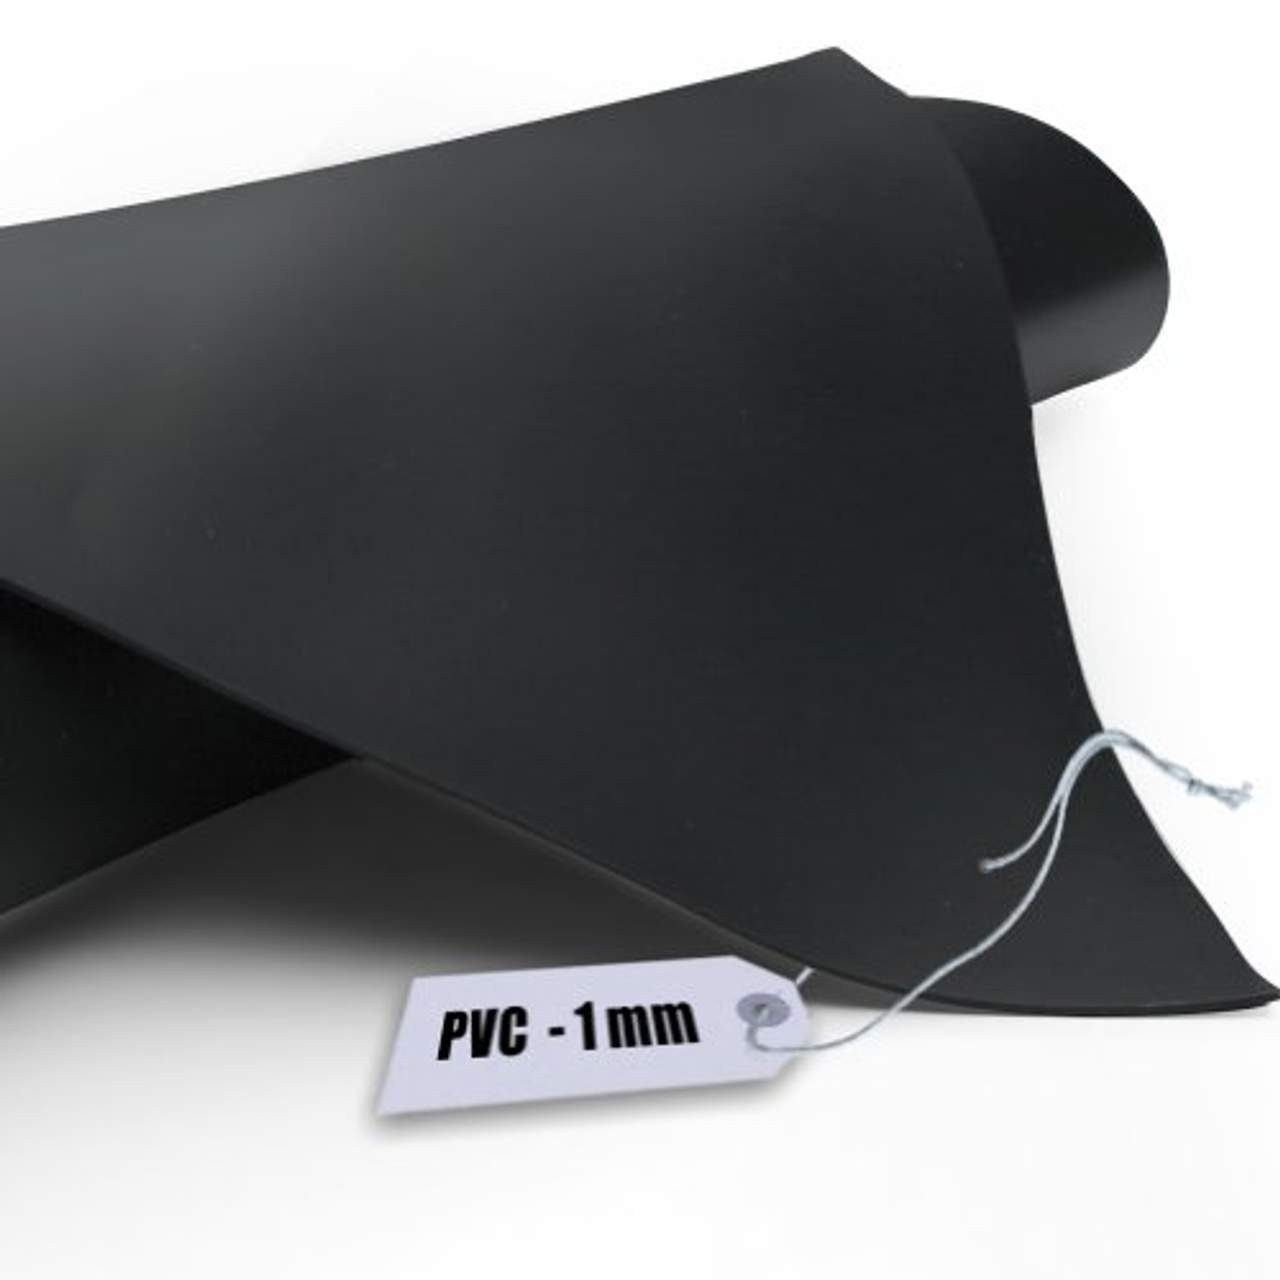 Teichfolie PVC 1mm schwarz in 4m x 4m